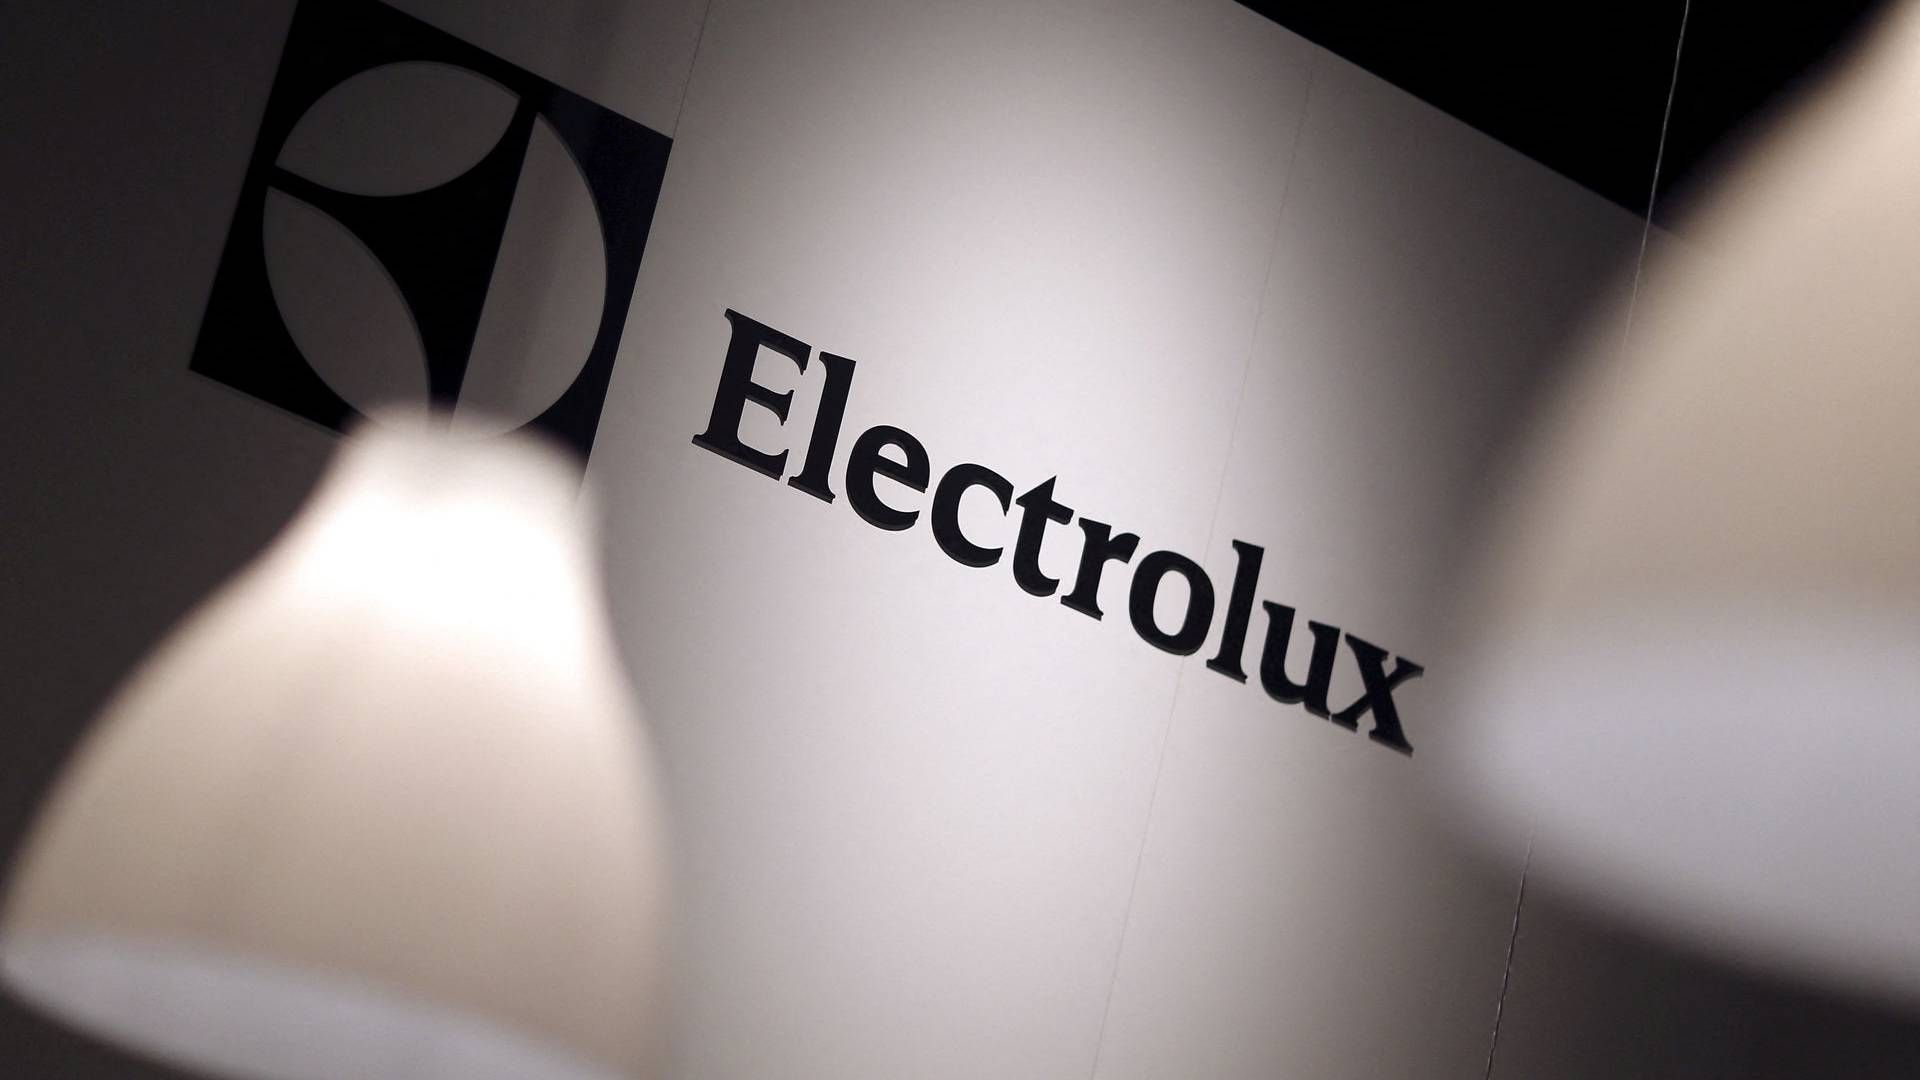 Efterspørgslen på Electrolux' produkter som støvsugere og hårde hvidevarer er faldet i et "betydeligt accelereret tempo" i starten af tredje kvartal. | Foto: Hannibal Hanschke/Reuters/Ritzau Scanpix